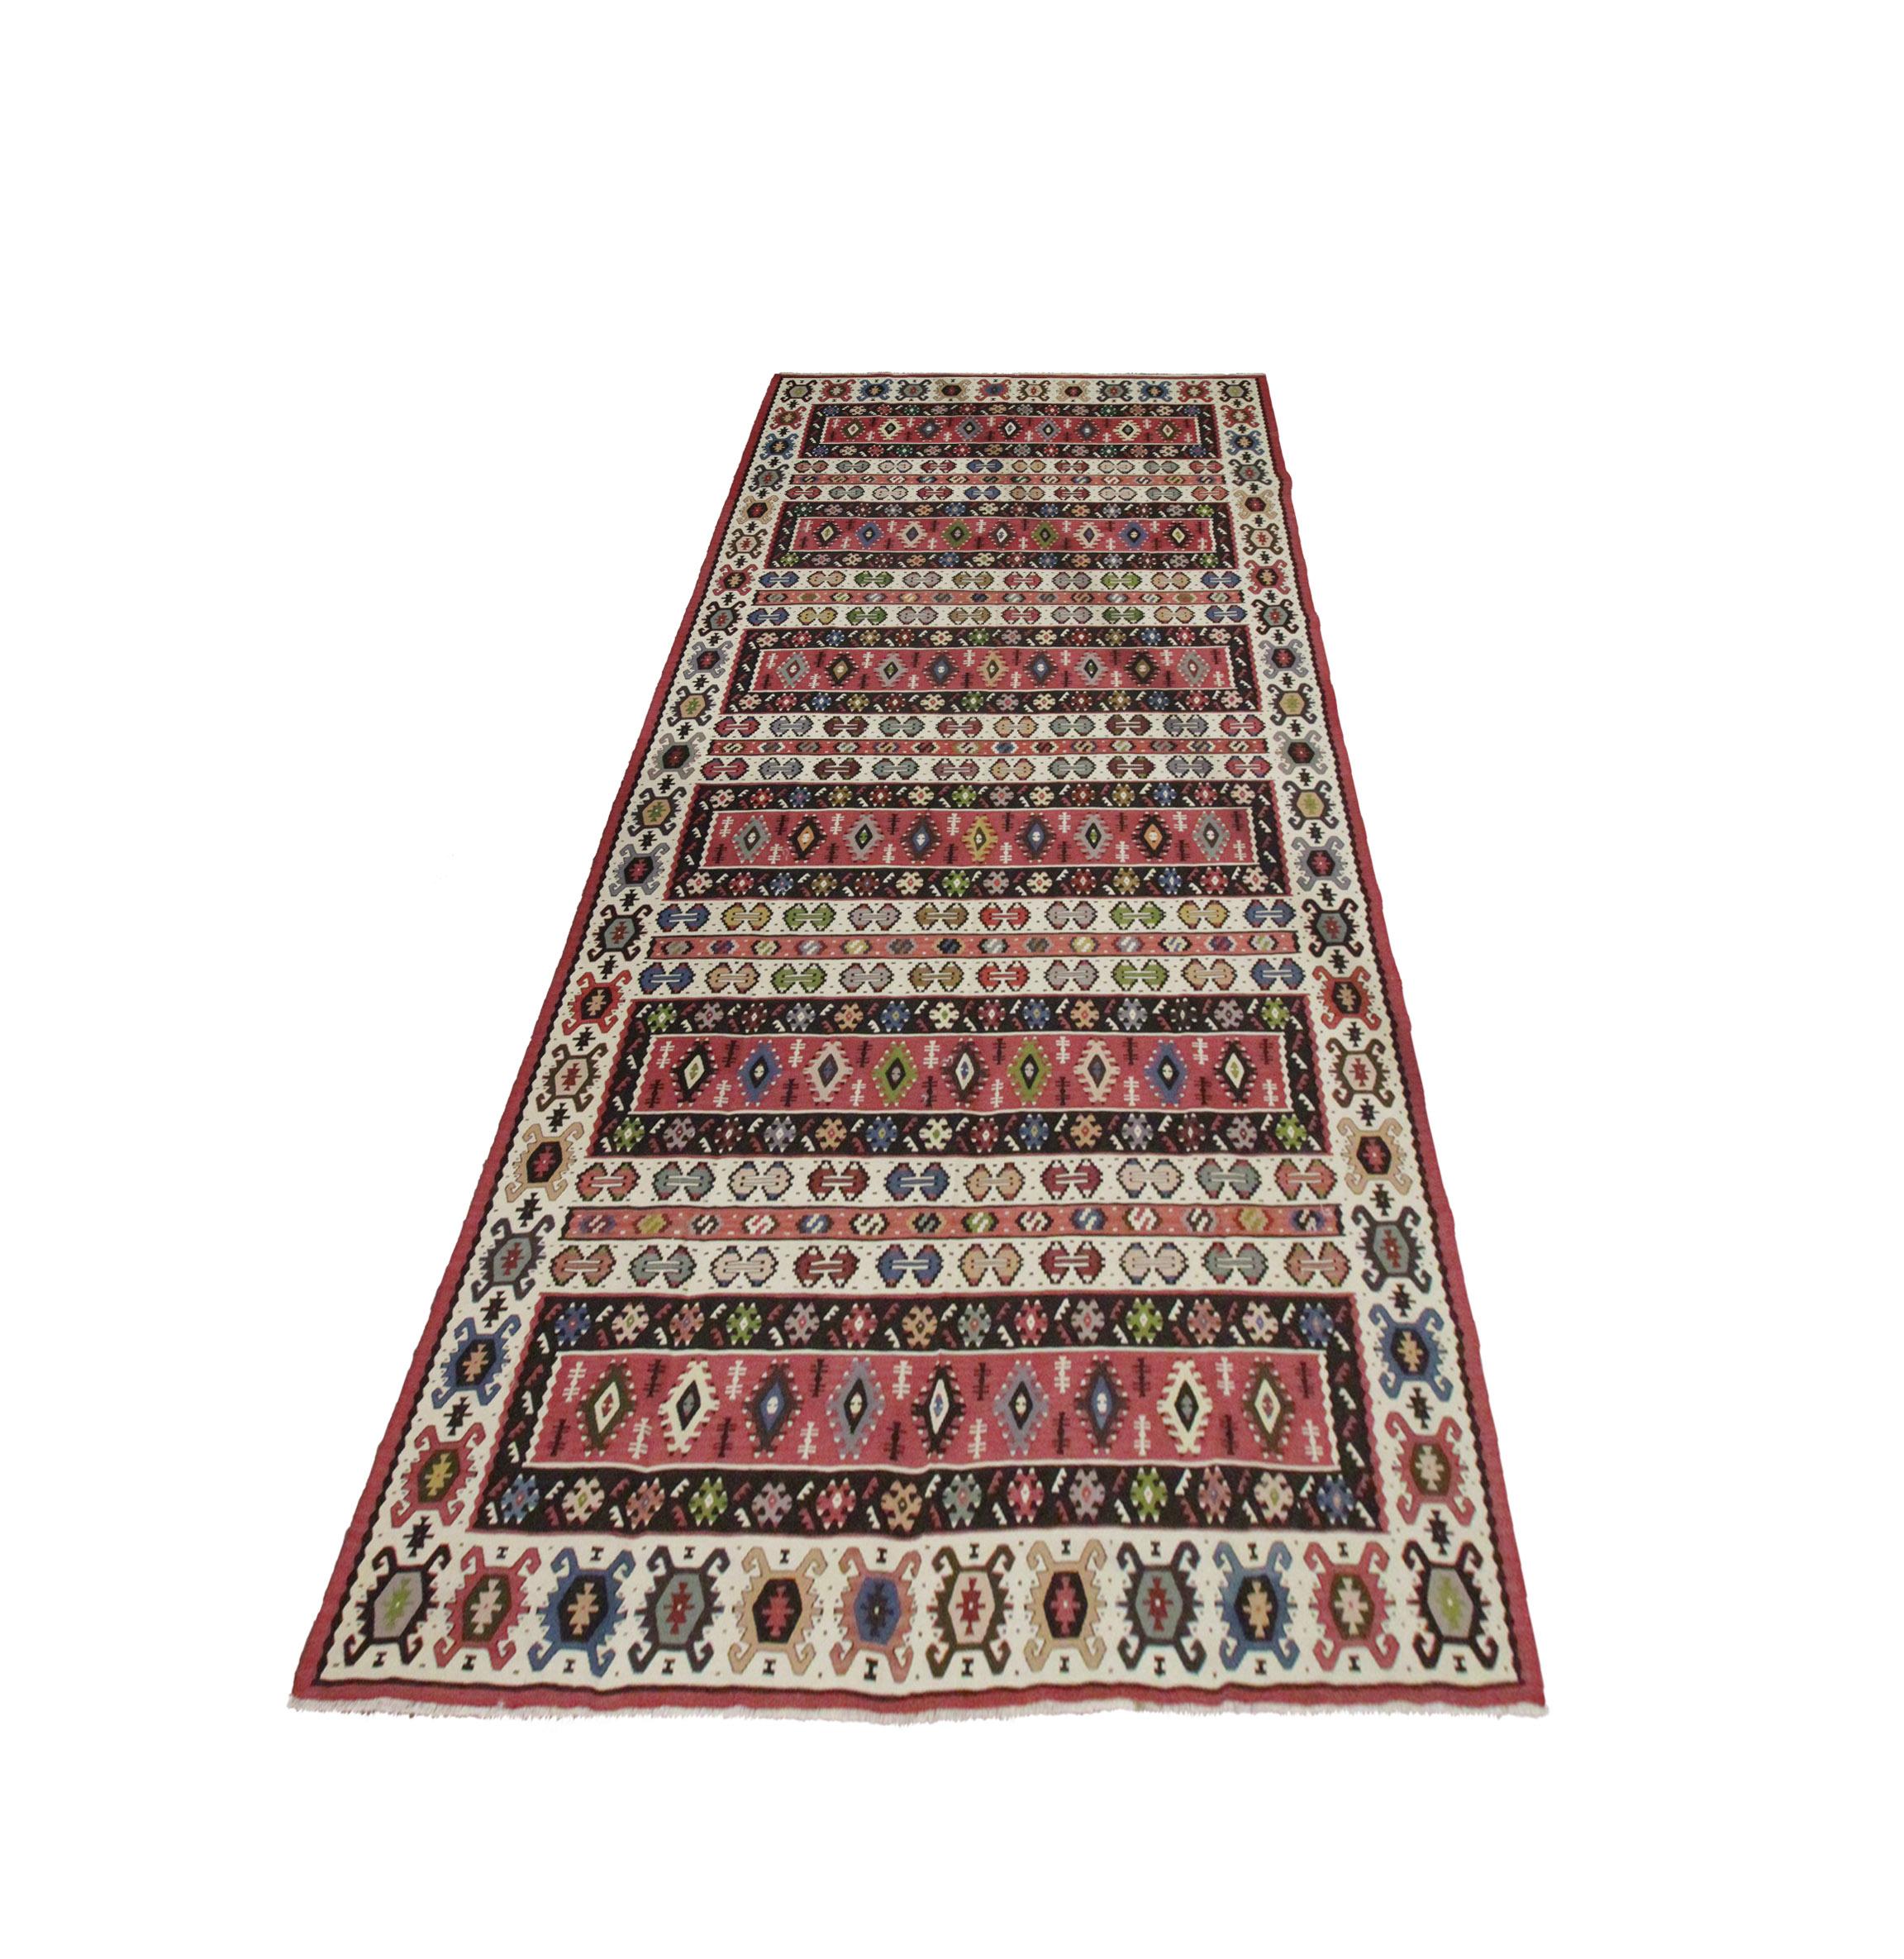 Dieser große Teppich ist ein handgewebter serbischer Kelim aus dem frühen 20. Jahrhundert. Das Design zeigt ein gestreiftes, geometrisches Muster in den Farben Rot, Beige, Blau und Grün. Das Design und die Farben sind so aufeinander abgestimmt, dass